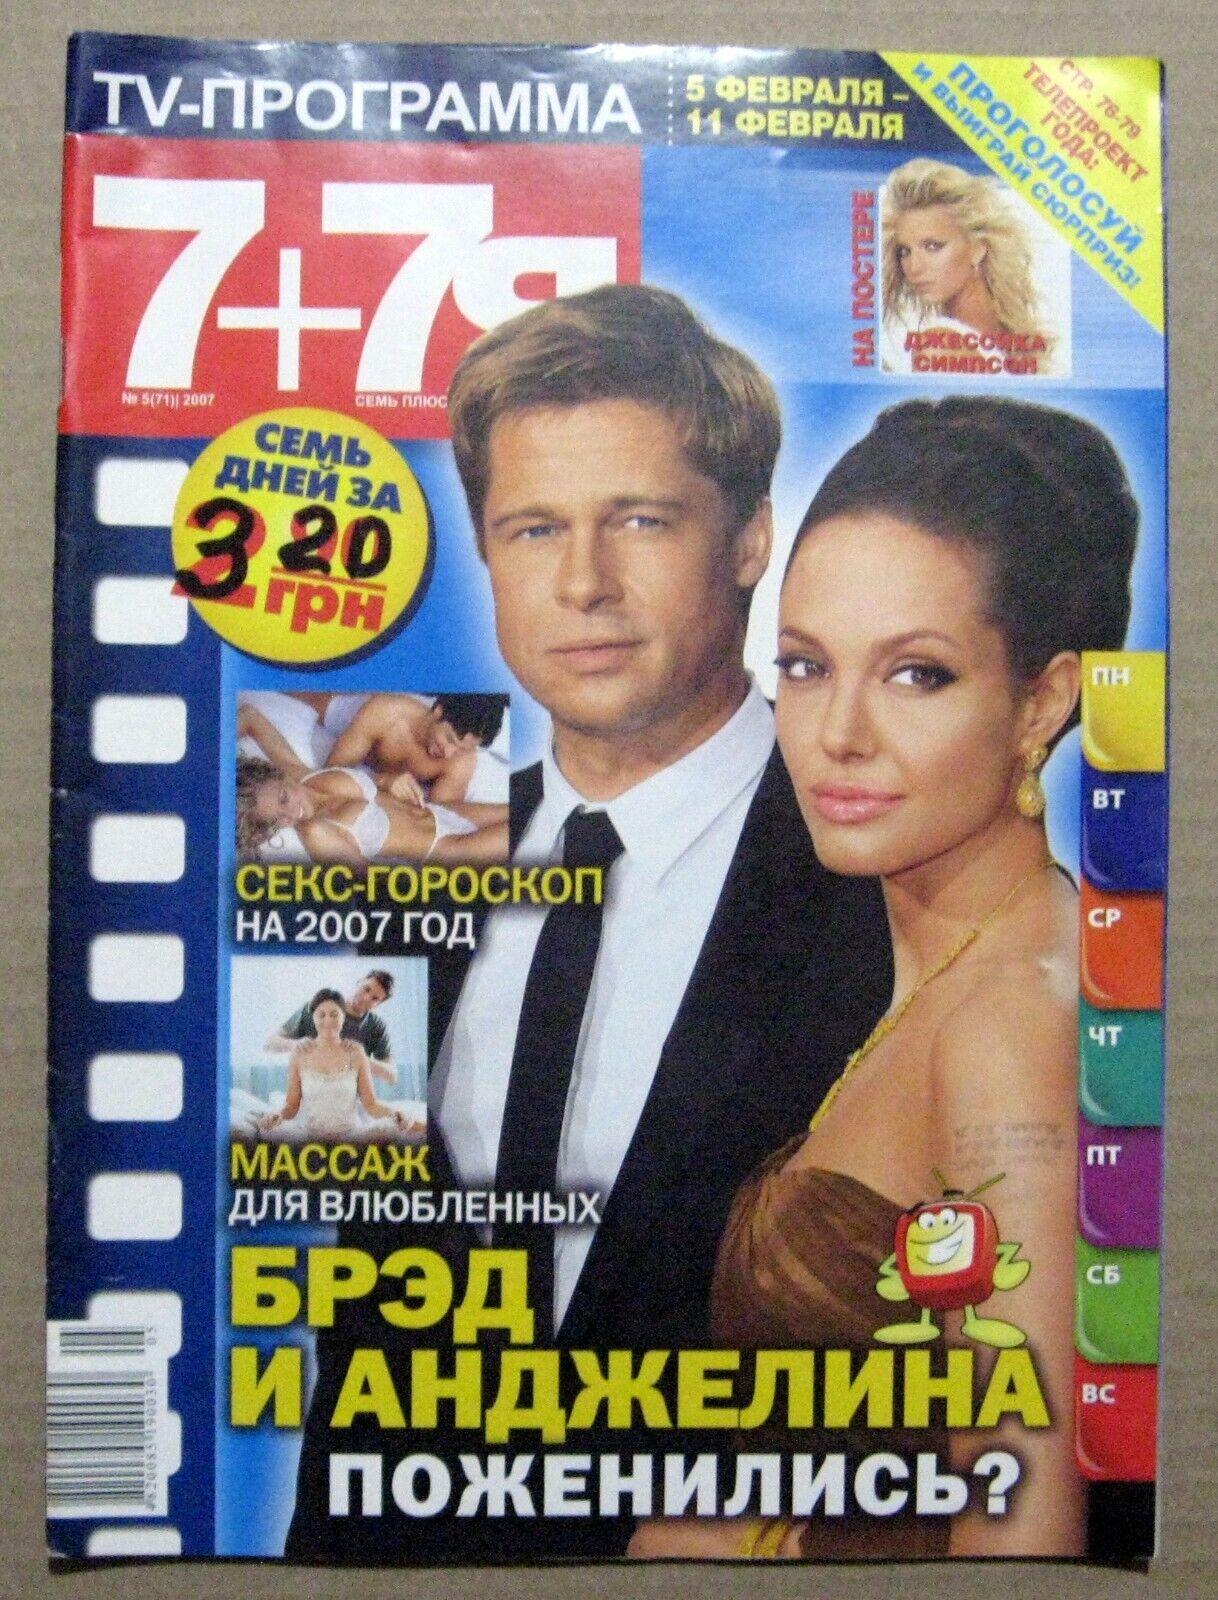 Magazine 2007 Ukraine Angelina Jolie Brad Pitt cover article